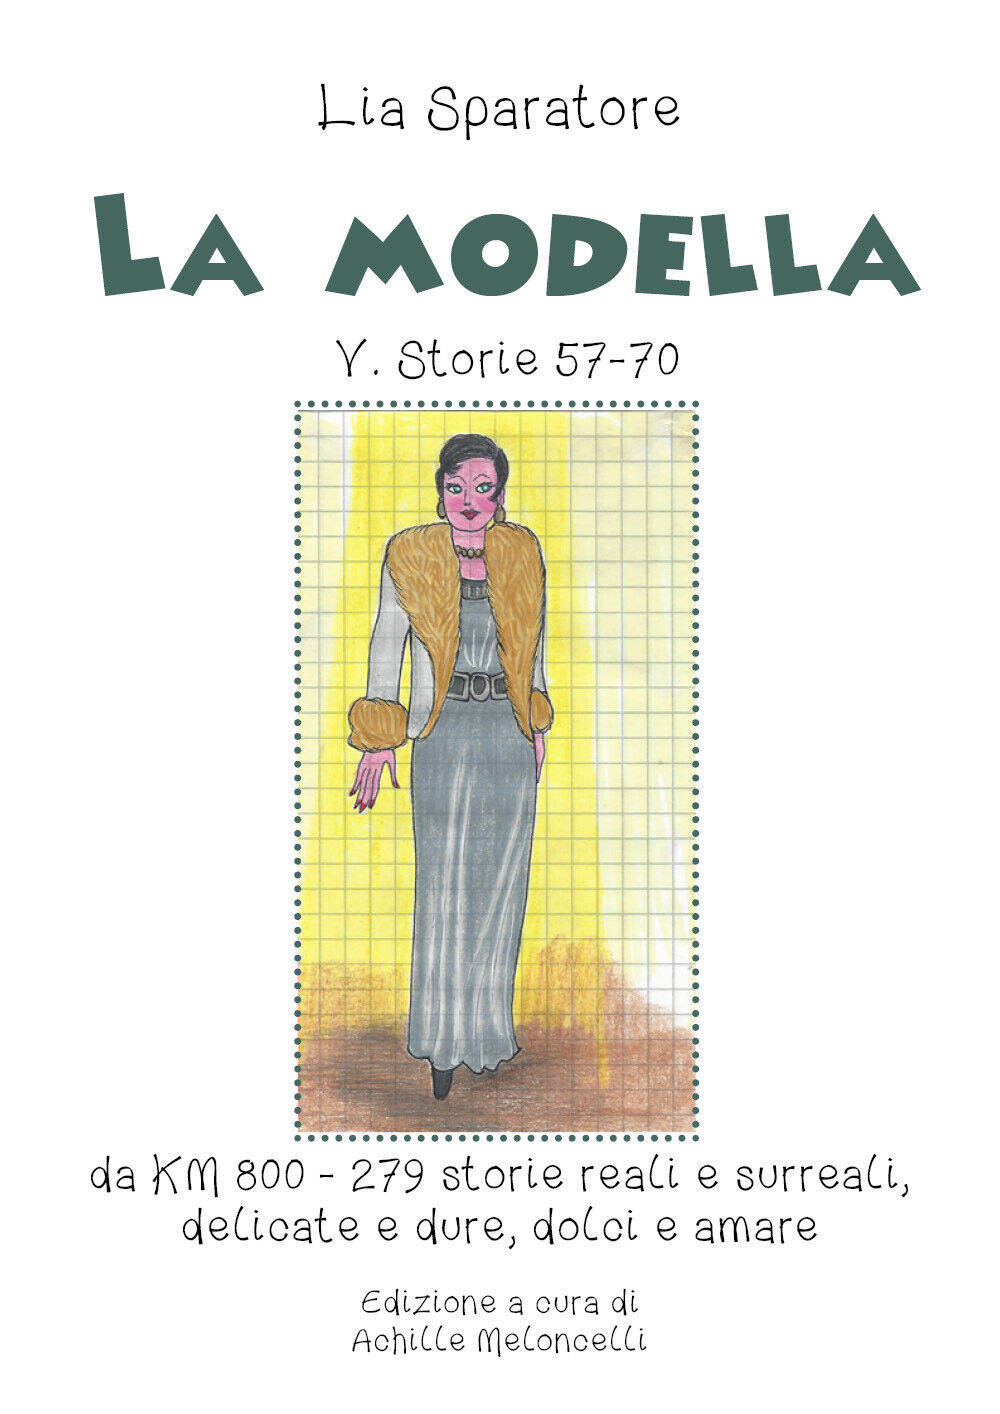 La modella V. Storie 57-70 da KM 800-279 storie reali e surreali, delicate e dur